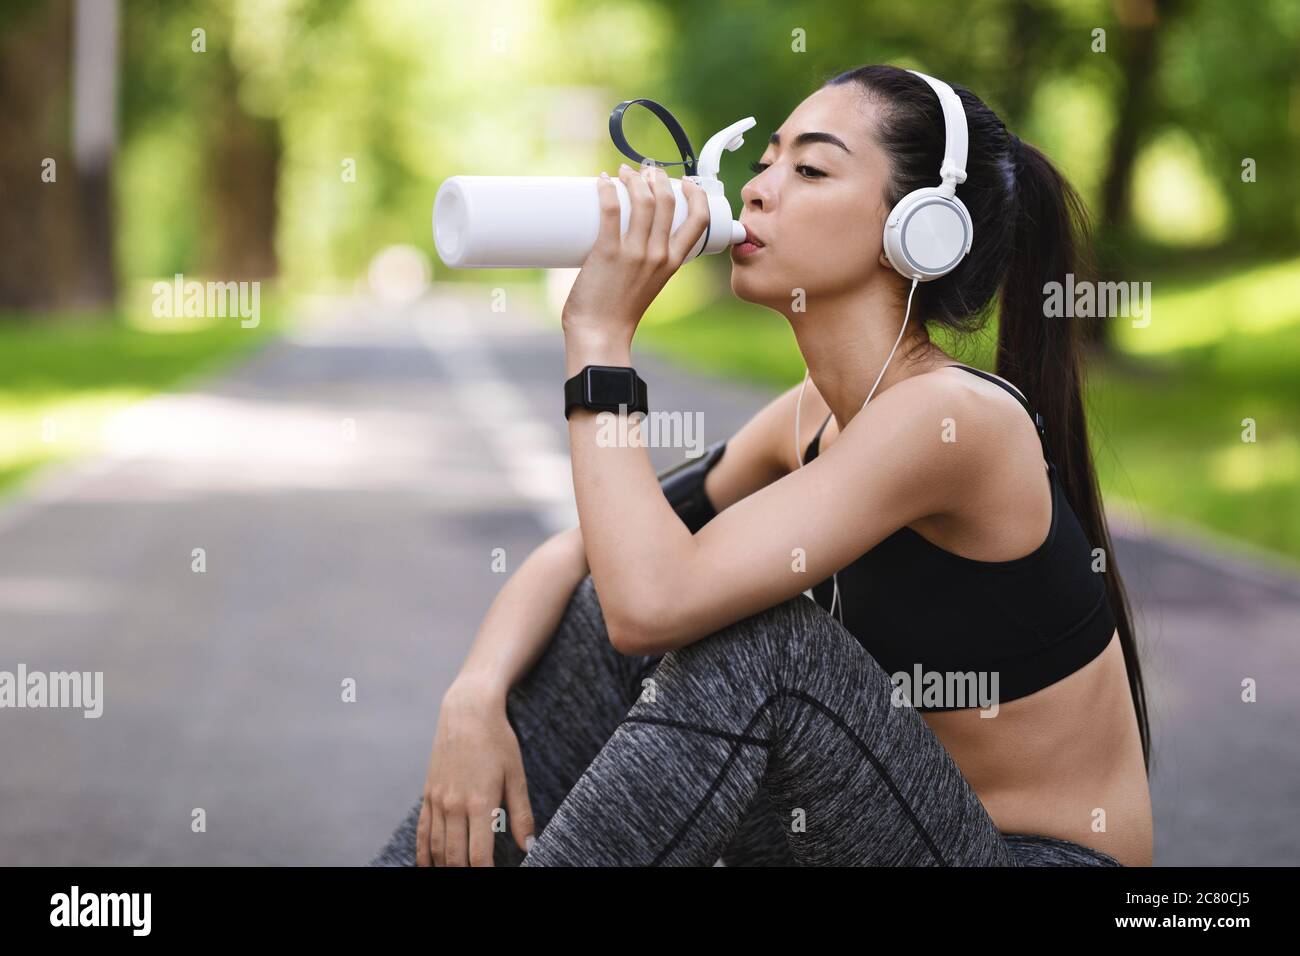 Sed después del entrenamiento. Joven asiática bebiendo agua, descansando después de correr fuera de los sóores Foto de stock